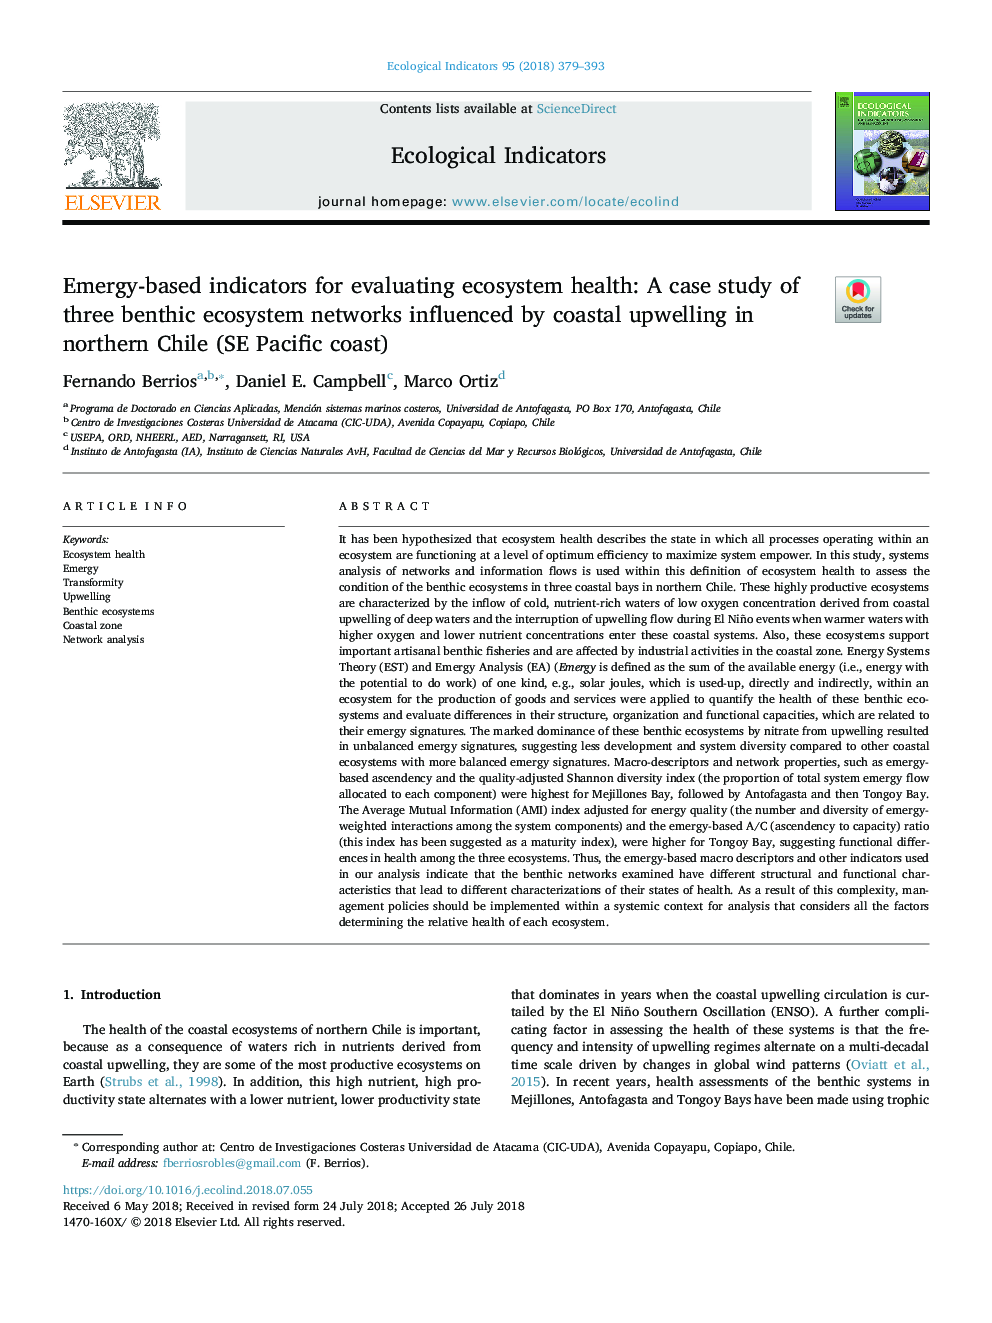 شاخص های مبتنی بر ایمنی برای ارزیابی سلامت اکوسیستم: مطالعه موردی از سه شبکه اکوسیستم بنتونیک تحت تأثیر آپولون ساحلی در شمال شیلی (ساحل دریای اقیانوس آرام) 